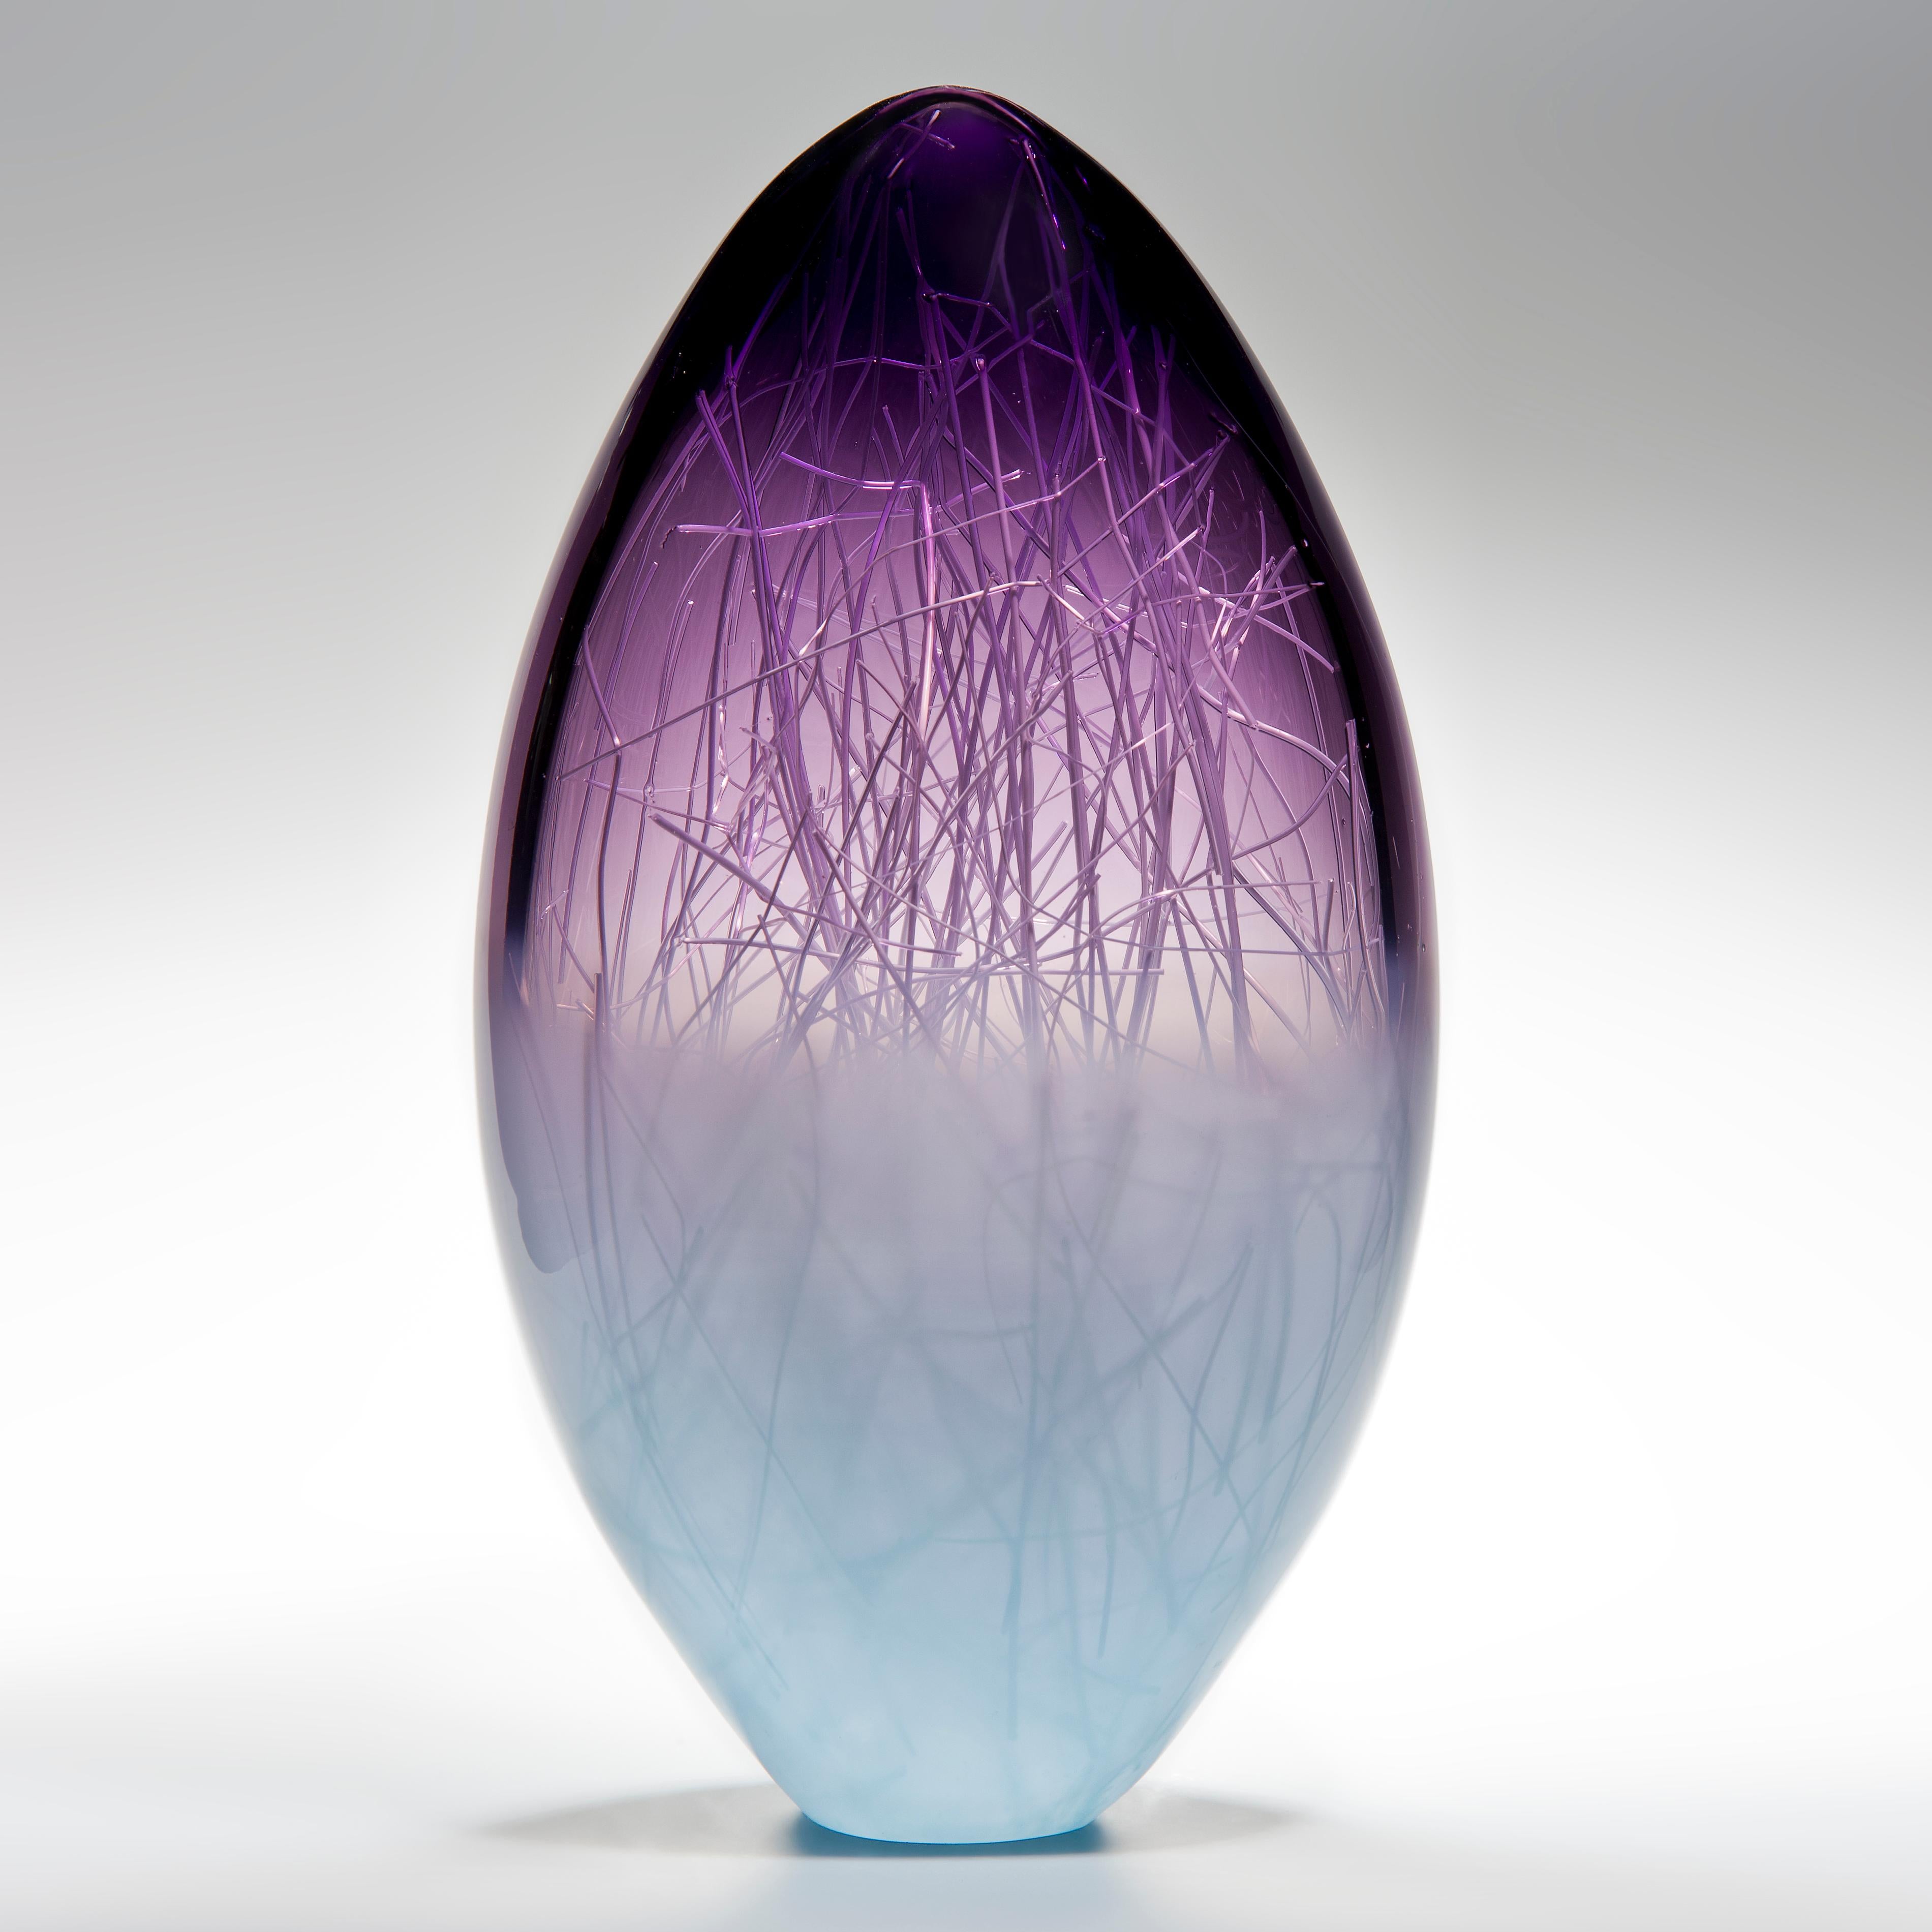 Panicum in Indigo und Pale Turquiose ist eine einzigartige Glasskulptur aus violettem und zartblauem Glas, die von den Künstlern Hanne Enemark (Dänin) und Louis Thompson (Brite) gemeinsam geschaffen wurde. Die äußere Glasform enthält eine Vielzahl